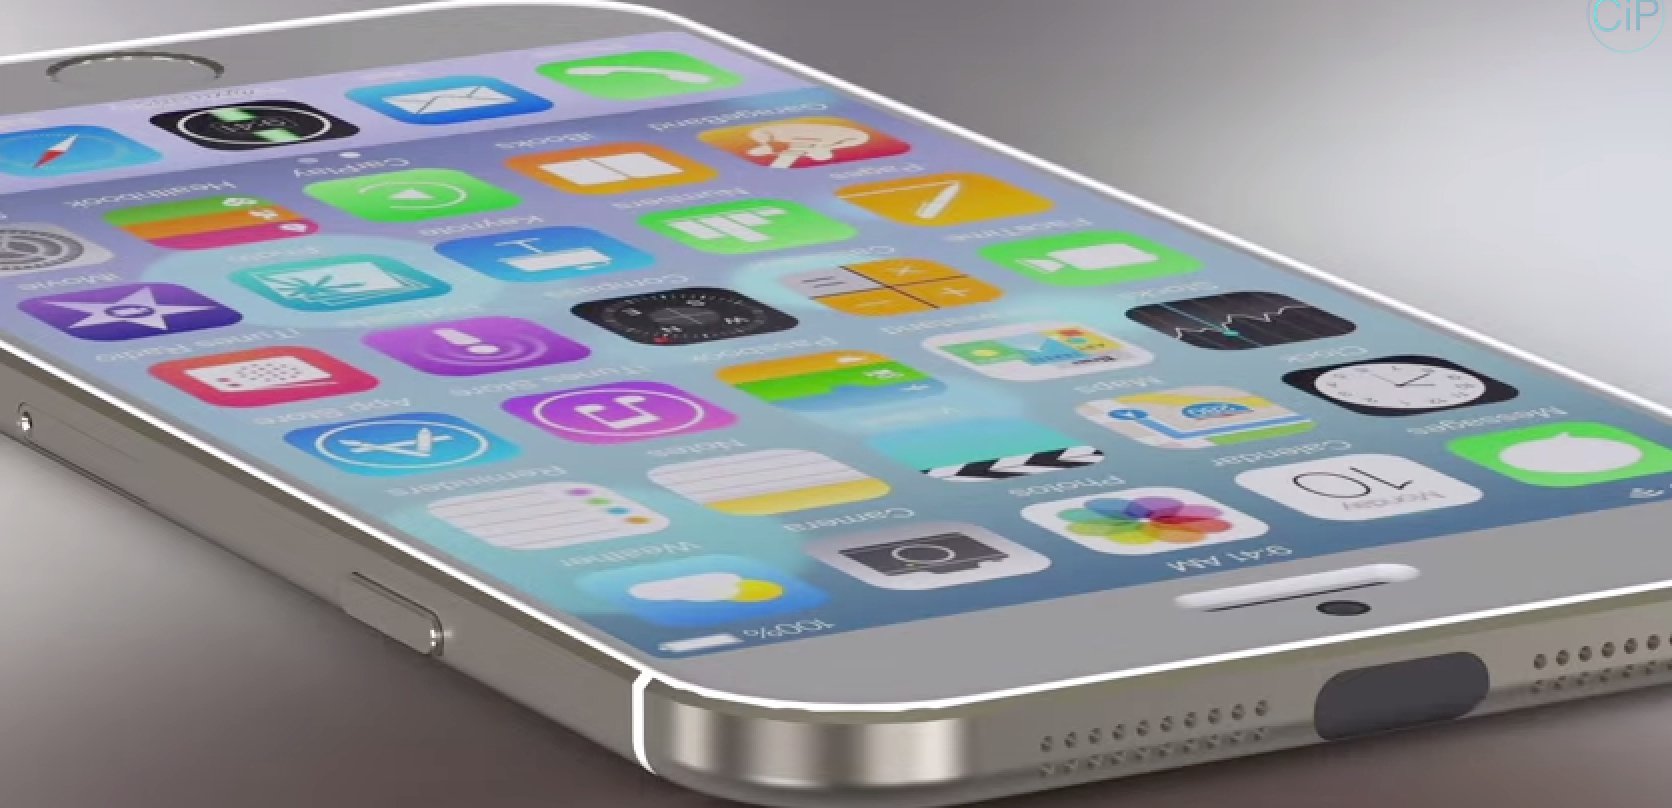 iPhone 6 mit iOS 8 im Vergleich mit Samsung Galaxy S5 (Konzept) 2